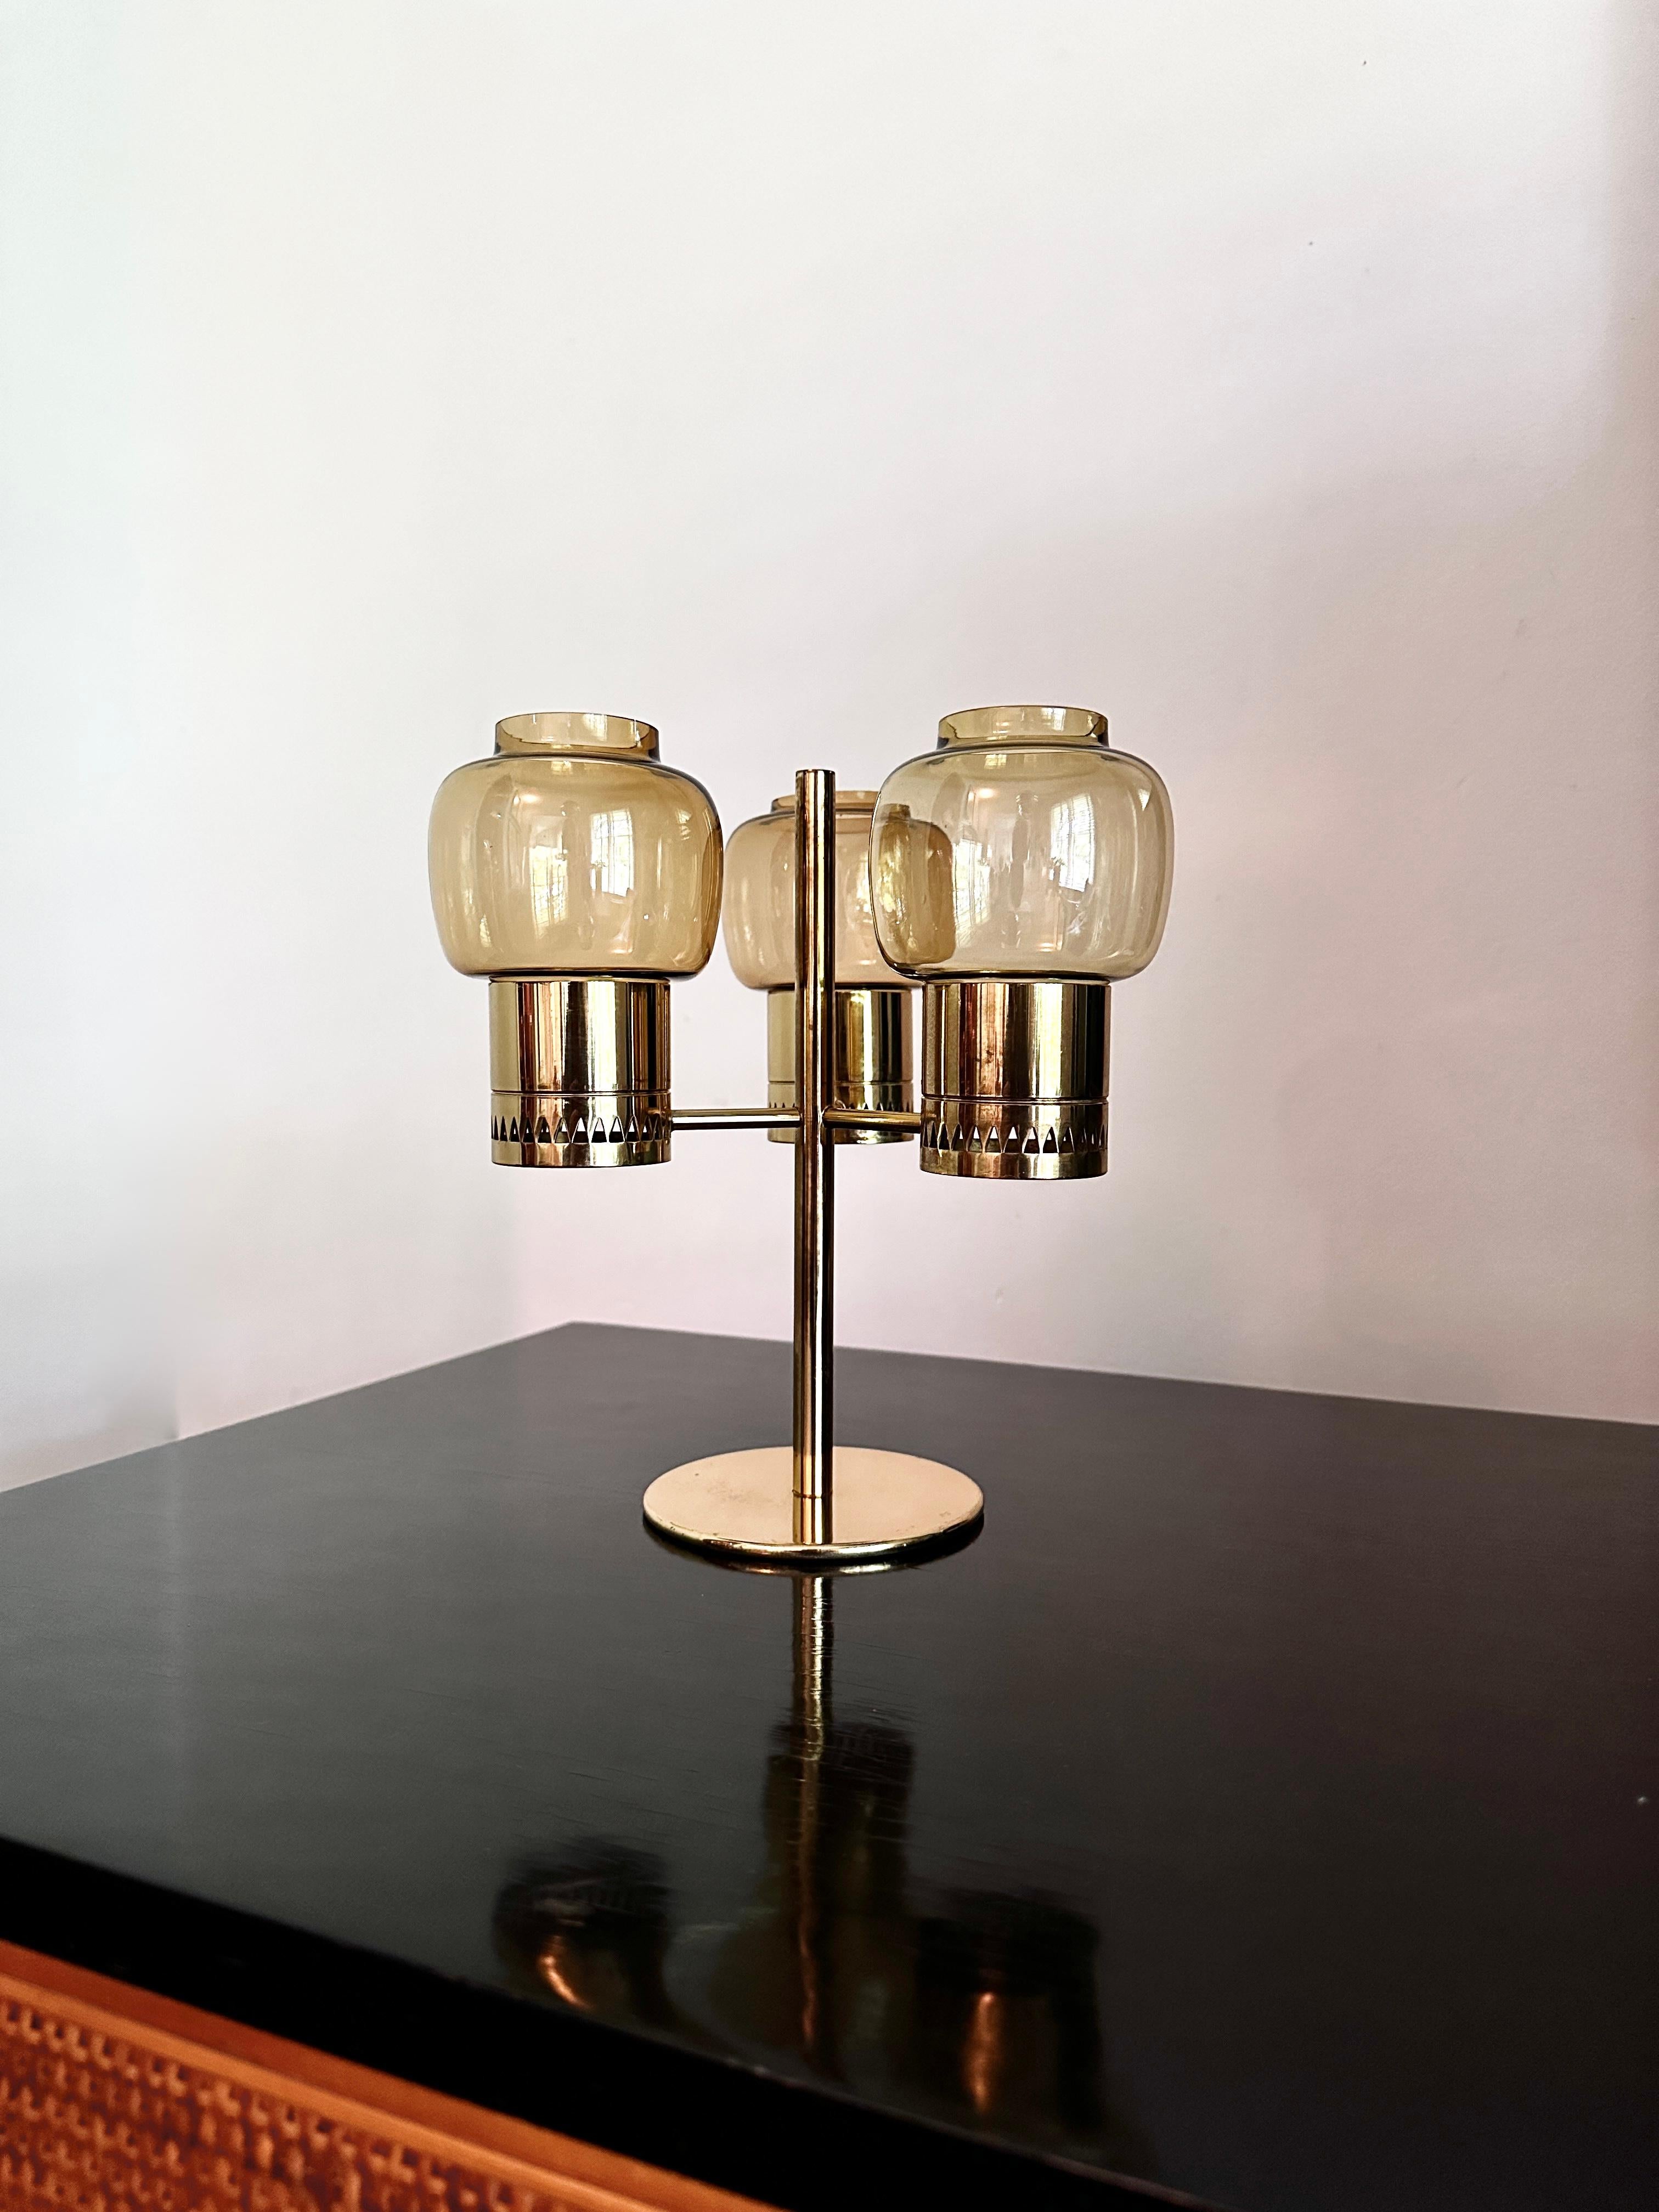 Un candélabre vintage à trois lumières de l'architecte / designer industriel suédois Hans - Agnes Jakobsson. Le candélabre a été initialement conçu dans les années 1960 et fabriqué par la société de Jakobsson, Hans - Agne Jakobsson AB, située à